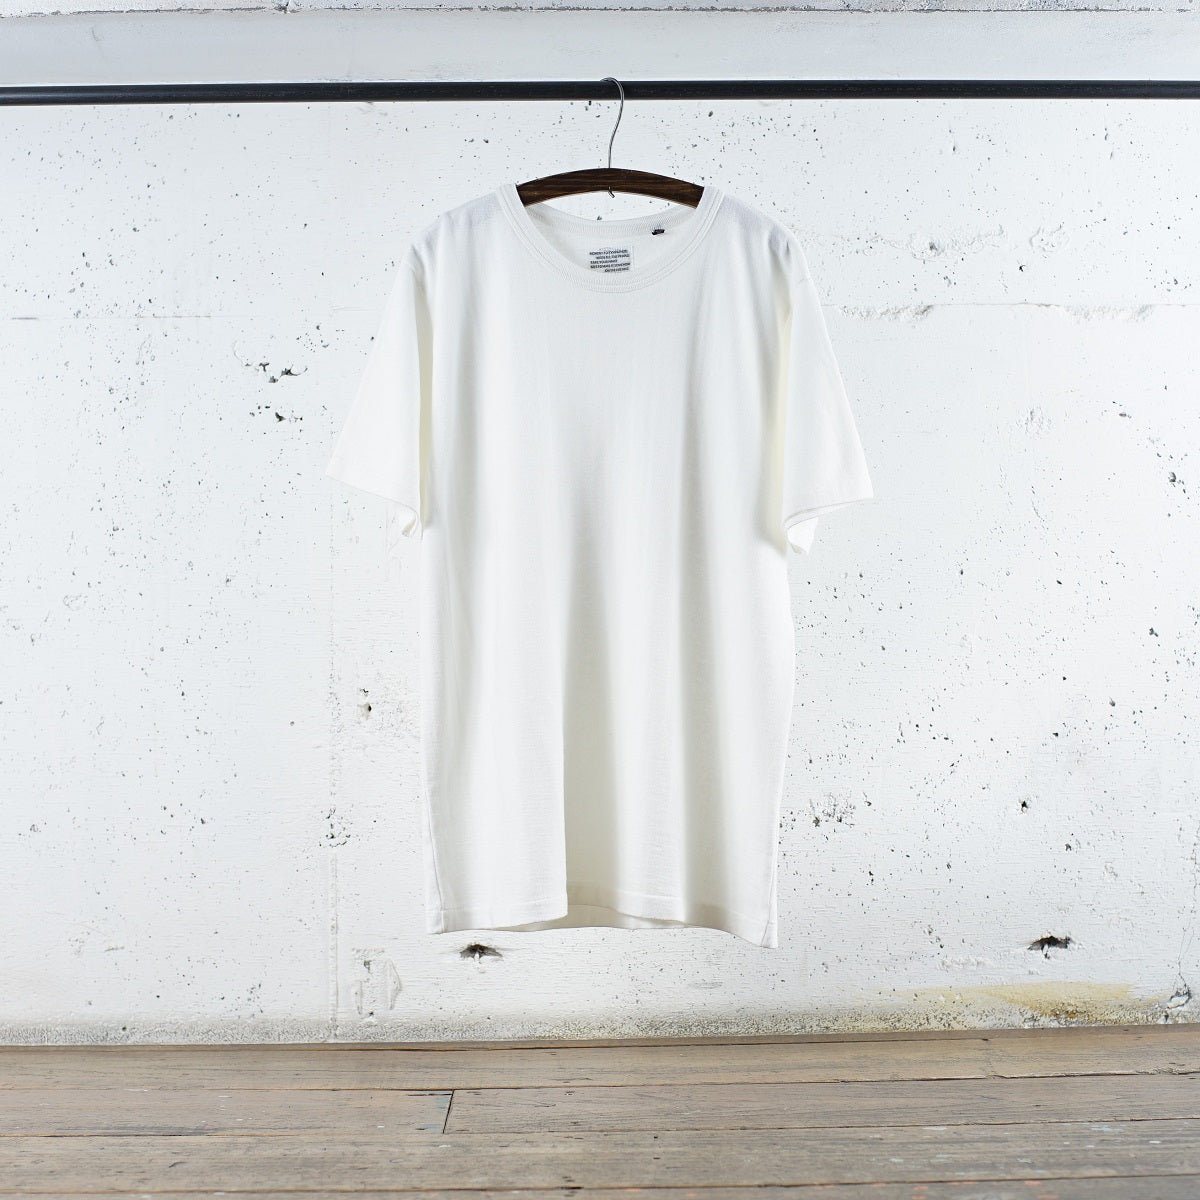 ディバイスファクトリー | Tシャツ メンズ レディース ロングセラー 艶のある上品な風合い White / L